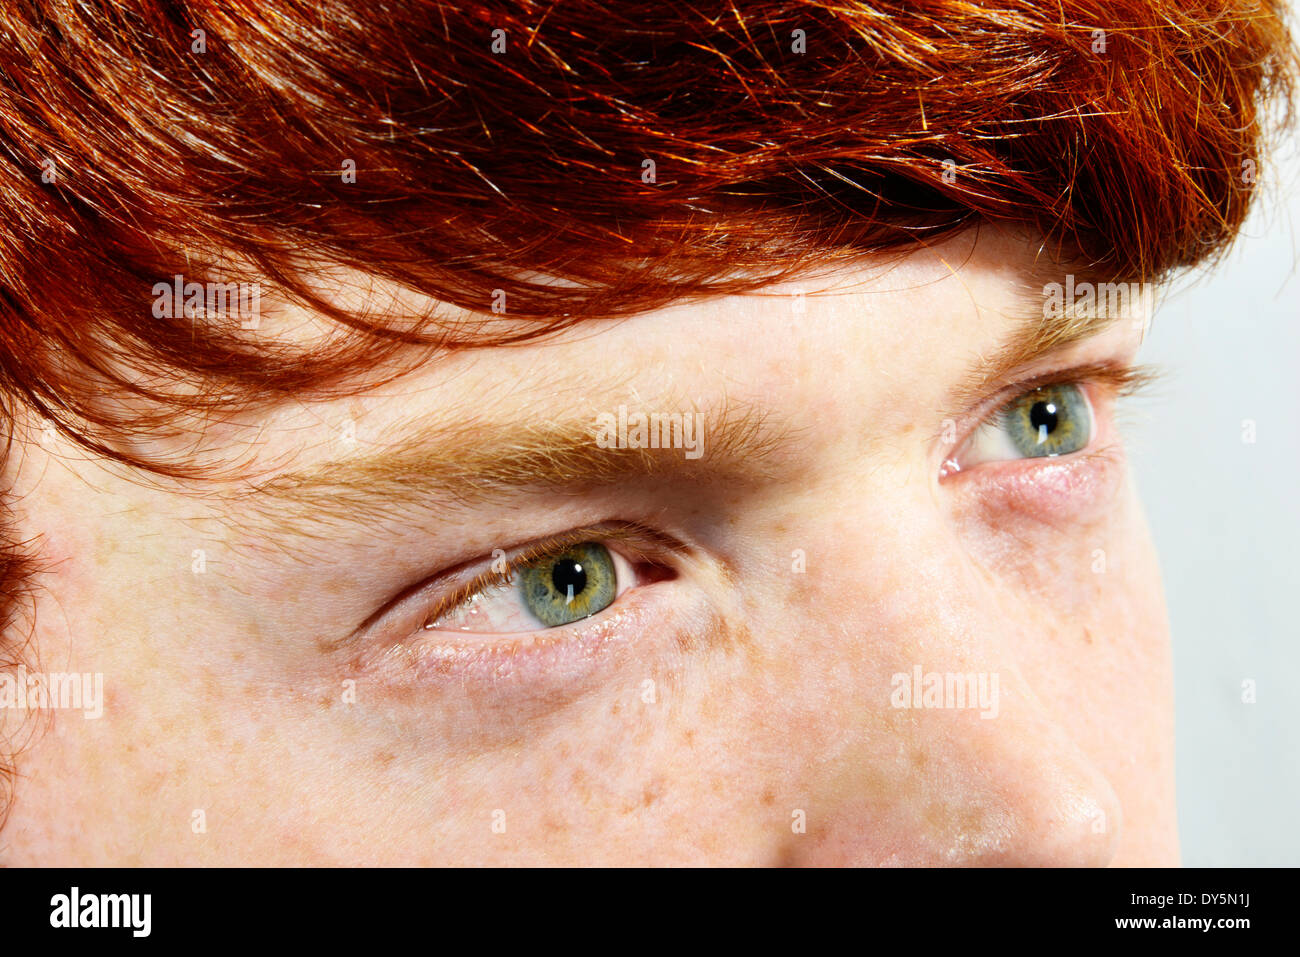 Haare rote grüne augen Augenfarbe